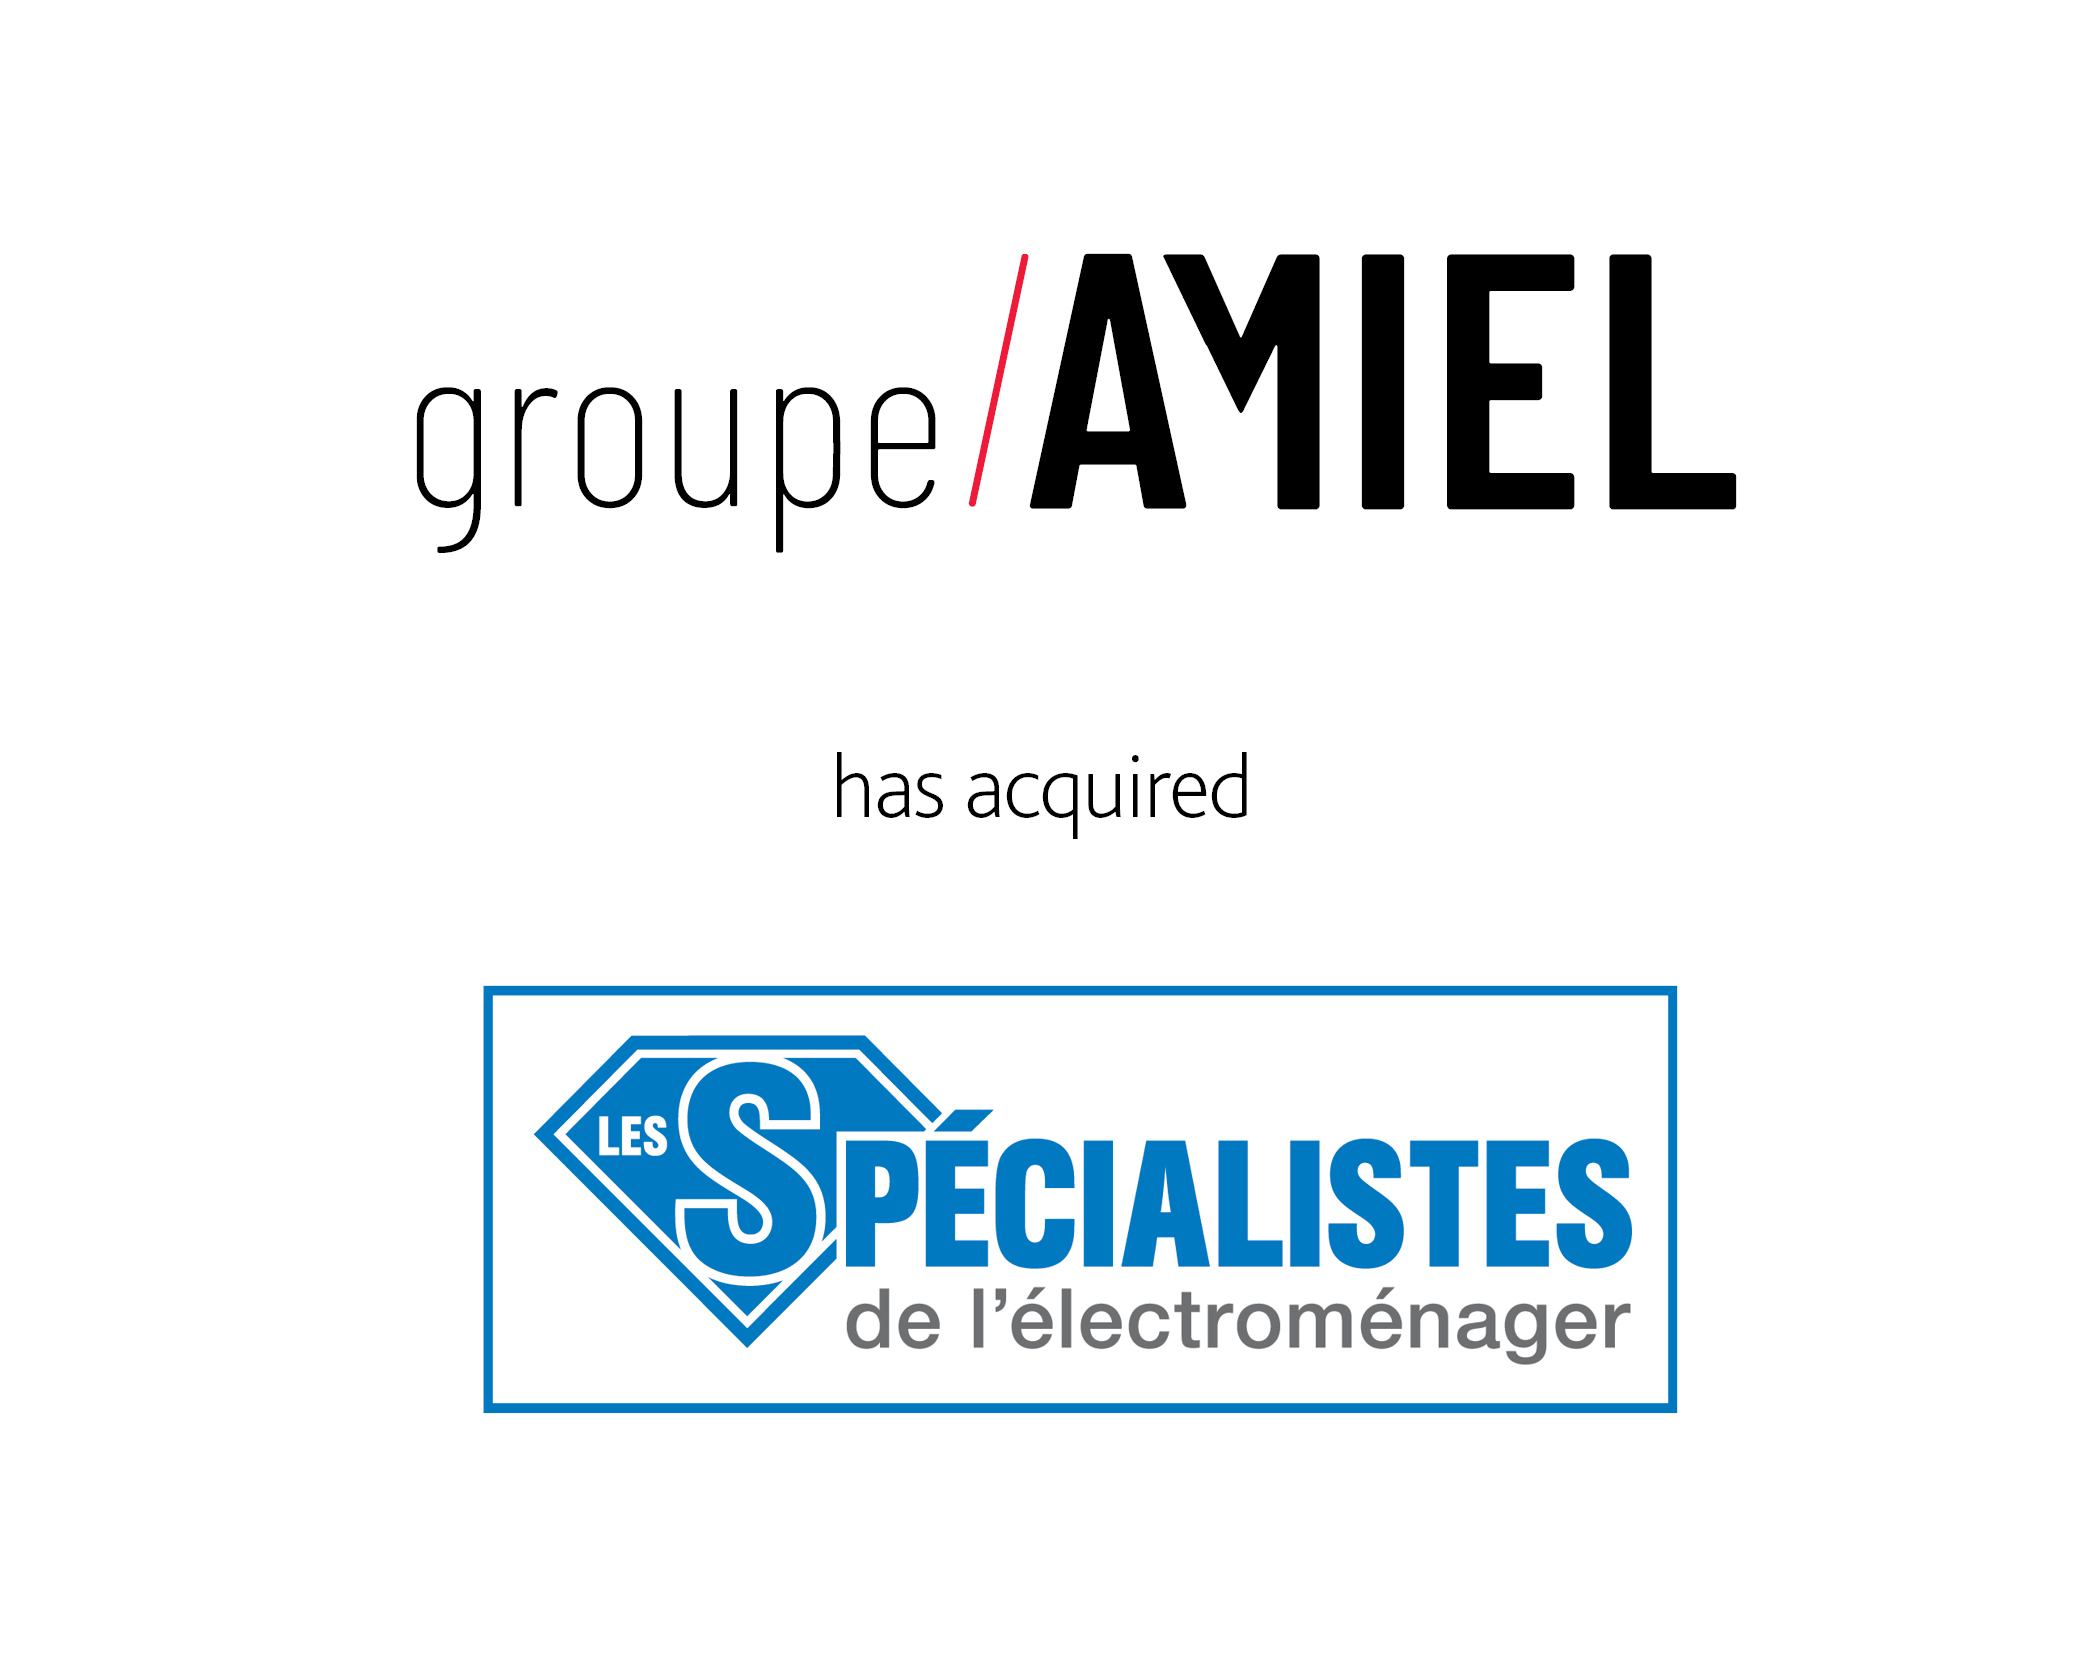 Groupe Amiel Inc. has acquired Les Spécialistes de l'électroménager